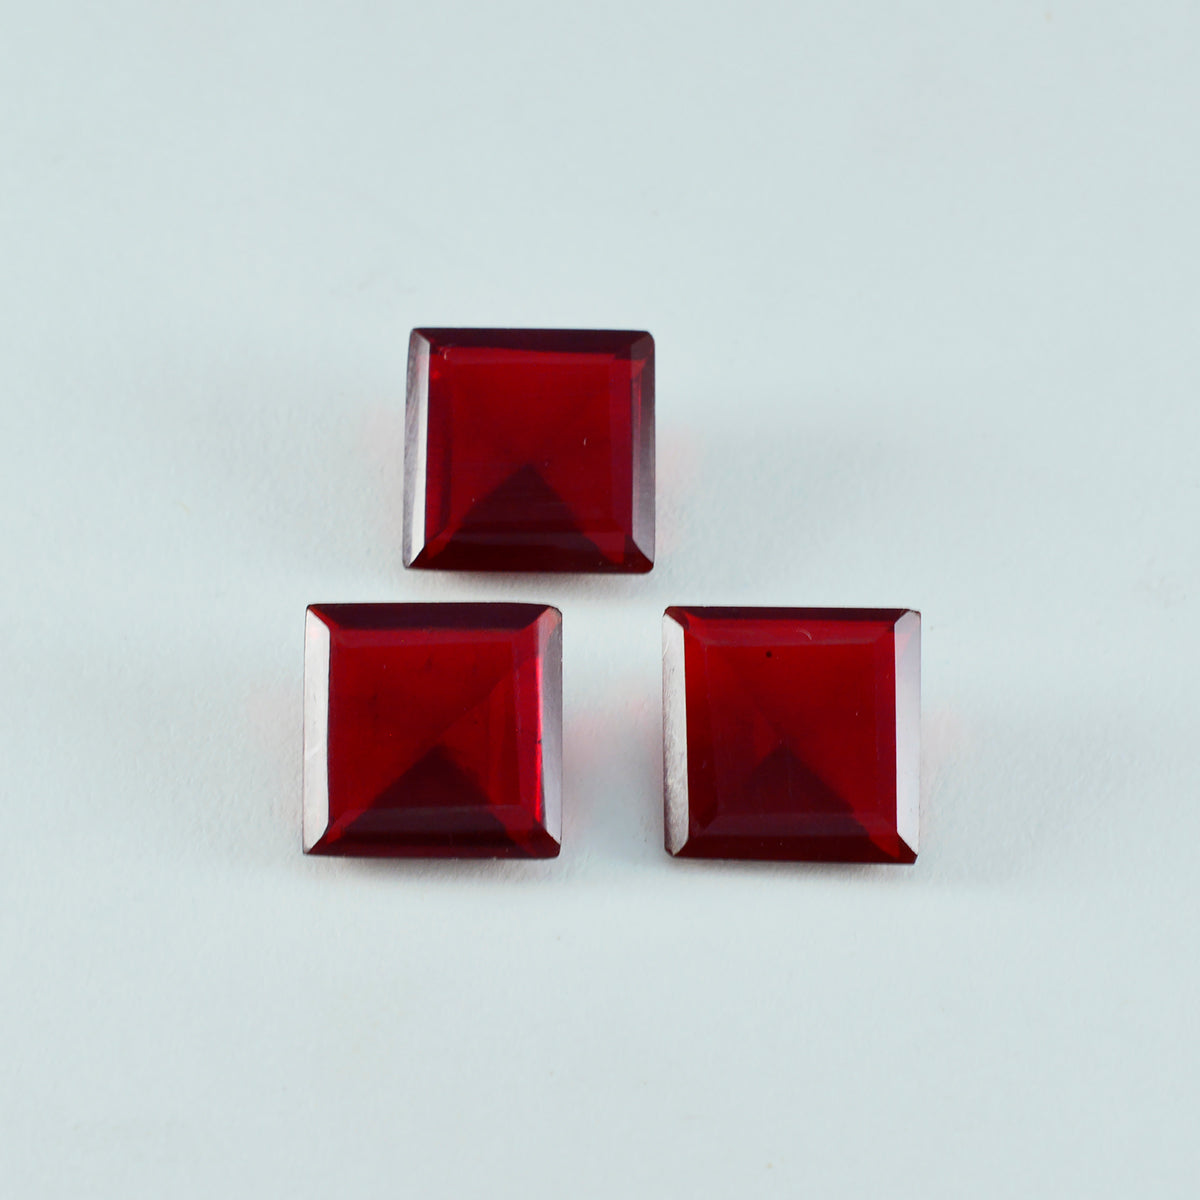 riyogems 1st röd rubin cz fasetterad 14x14 mm kvadratisk form fantastiska kvalitetsädelstenar